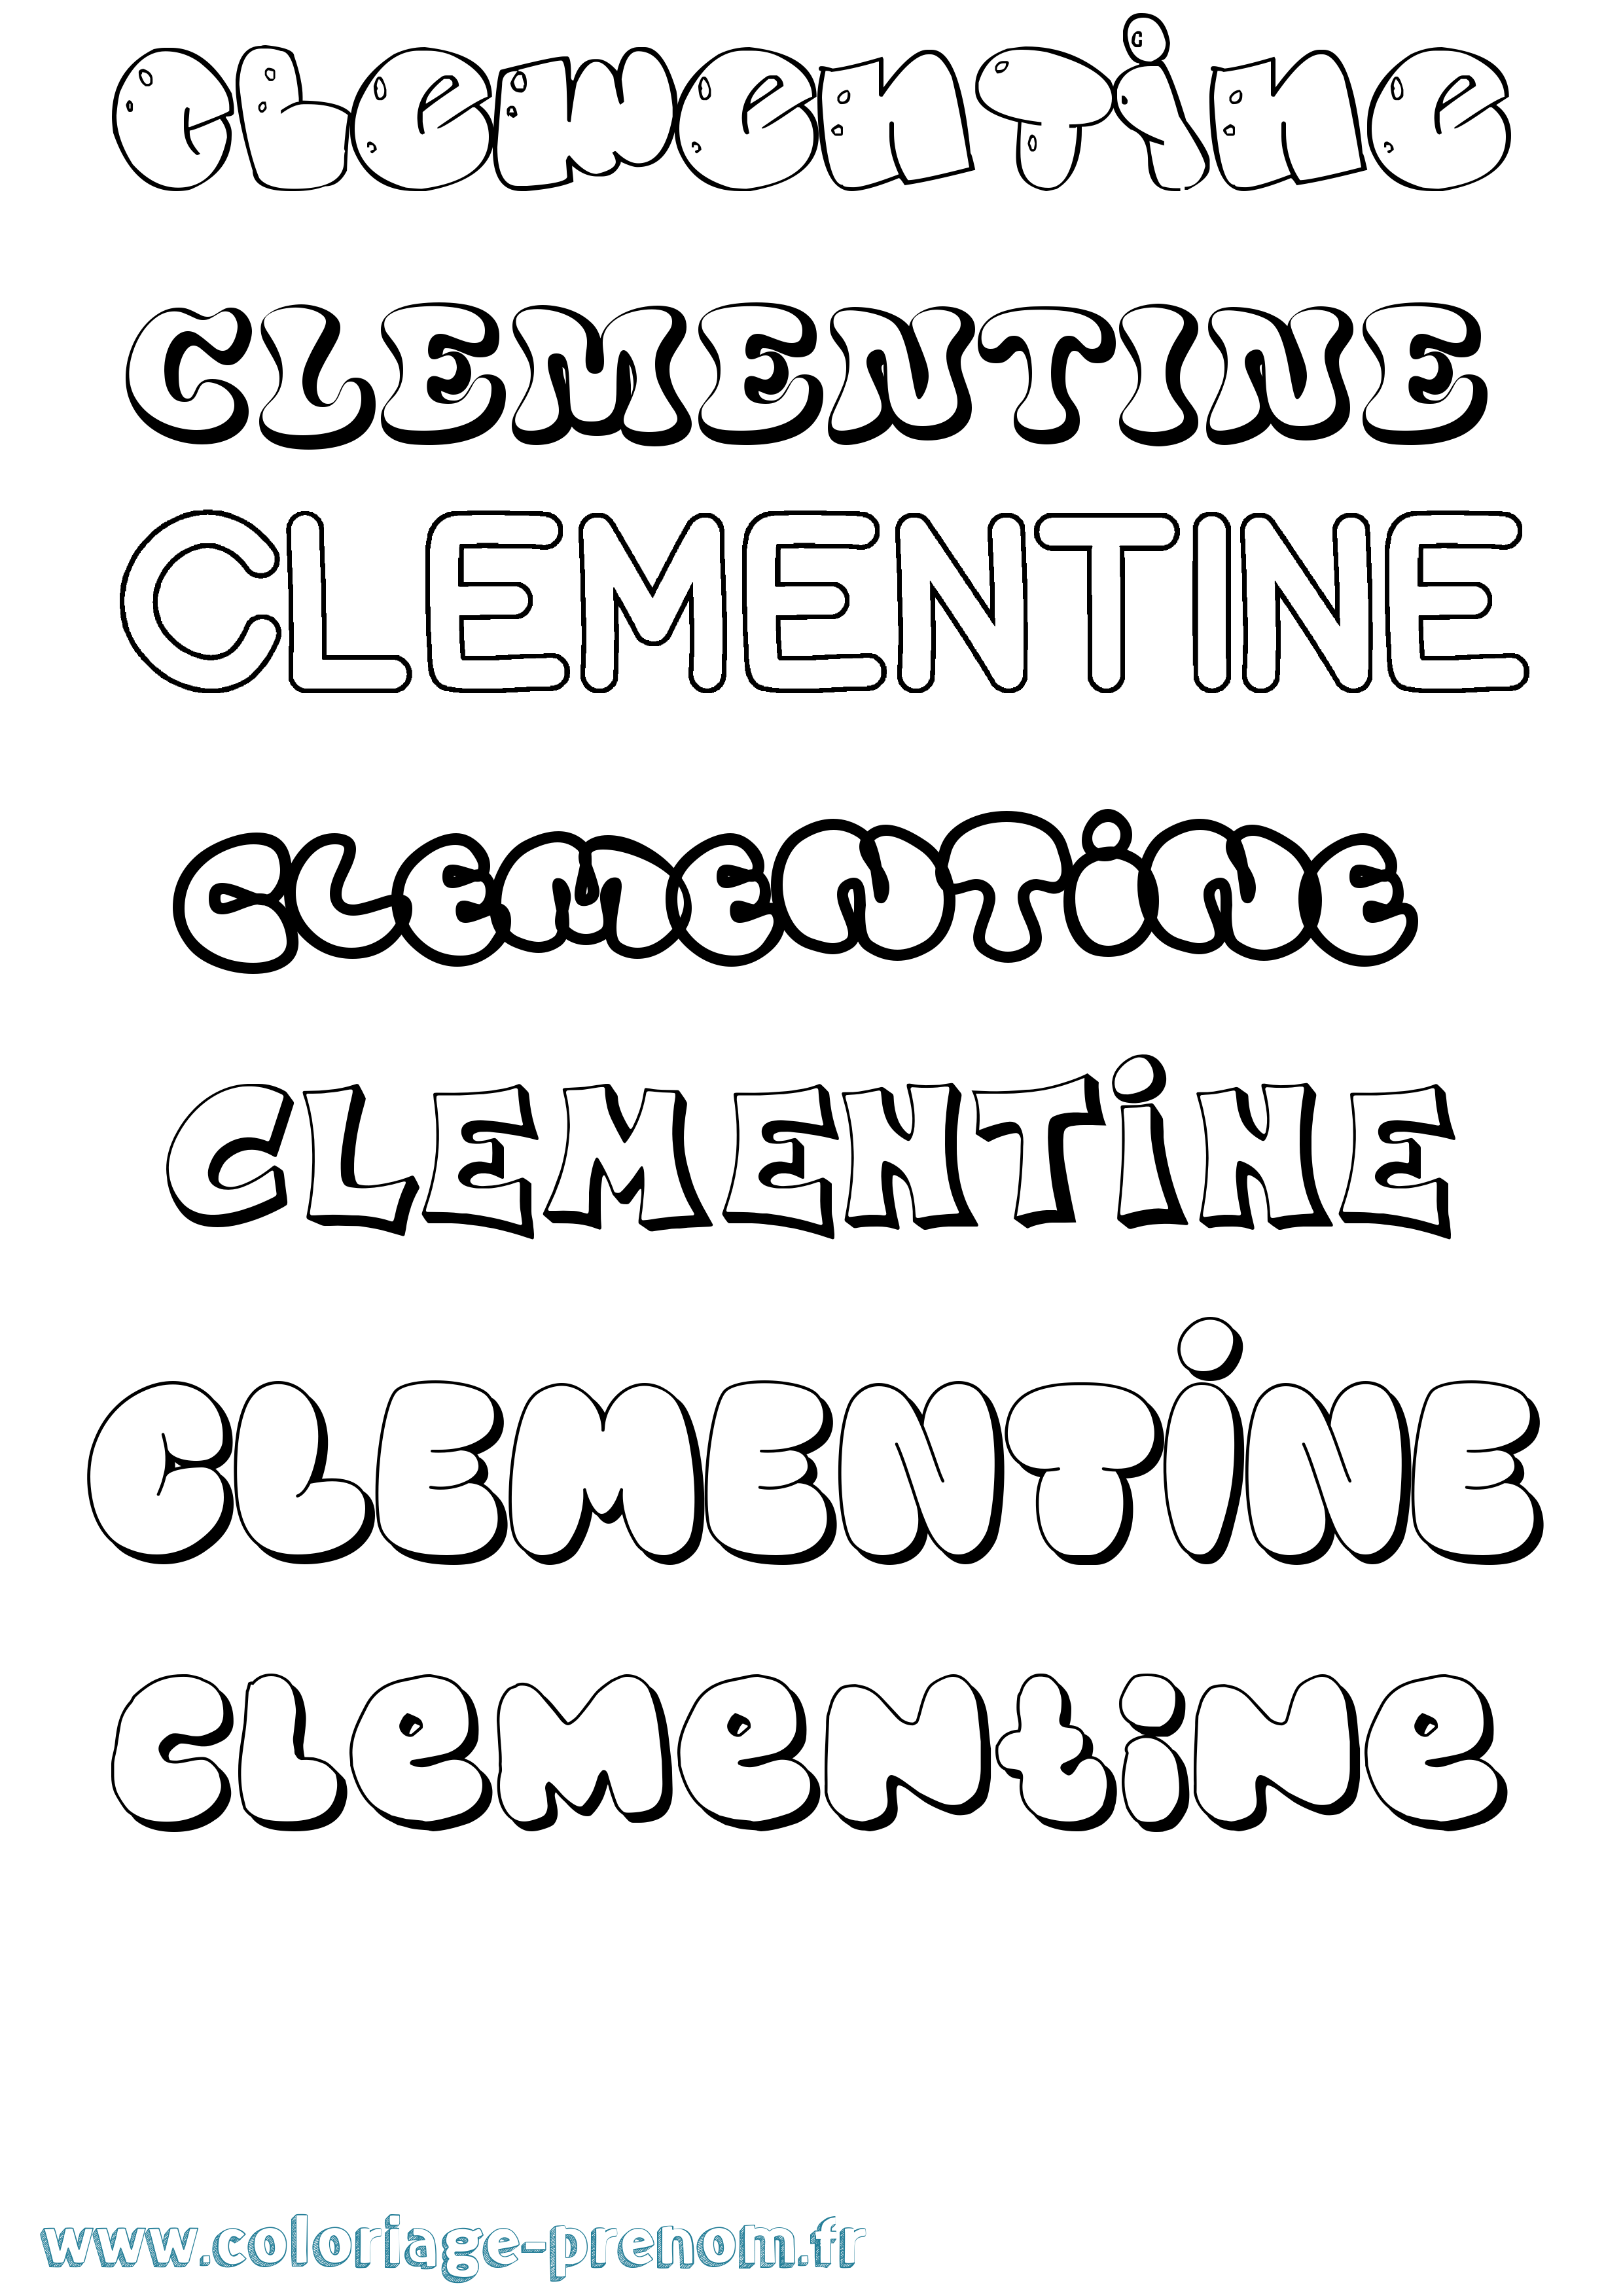 Coloriage prénom Clementine Bubble